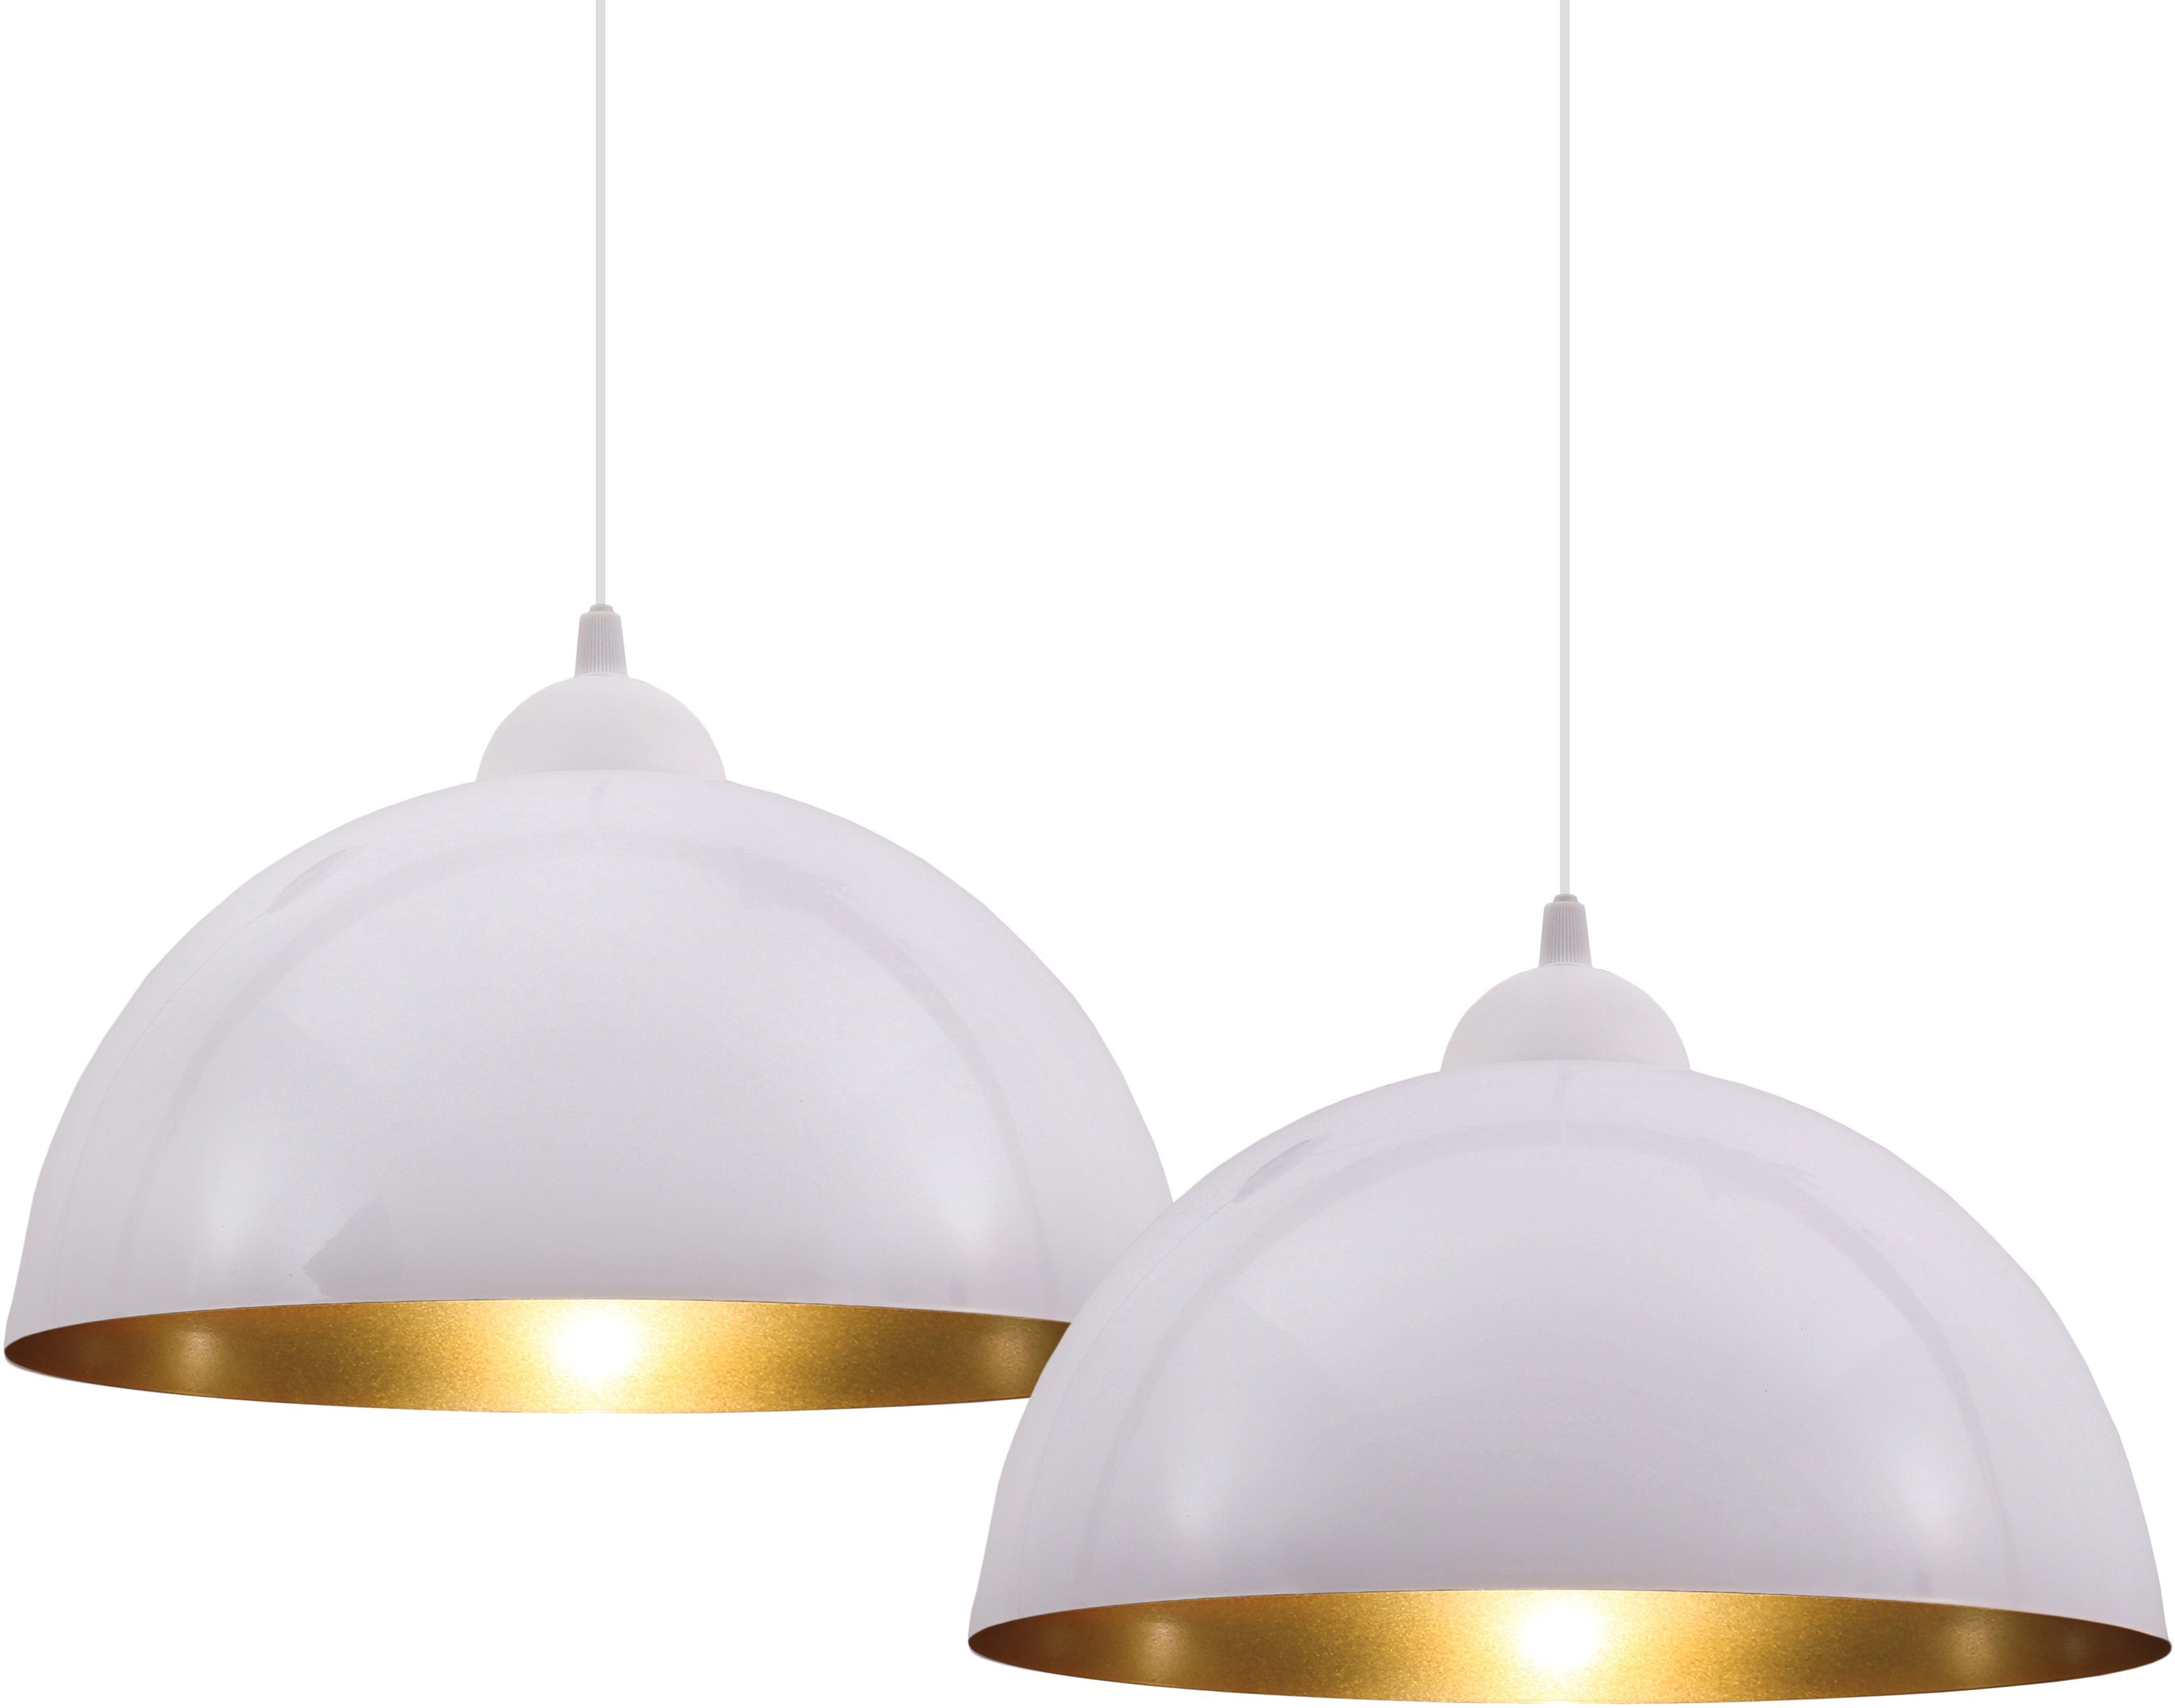 Auriga, ohne Design Hängeleuchte Esszimmer E27 Hängelampe Wohnzimmer B.K.Licht Leuchtmittel, weiß-gold Pendelleuchte